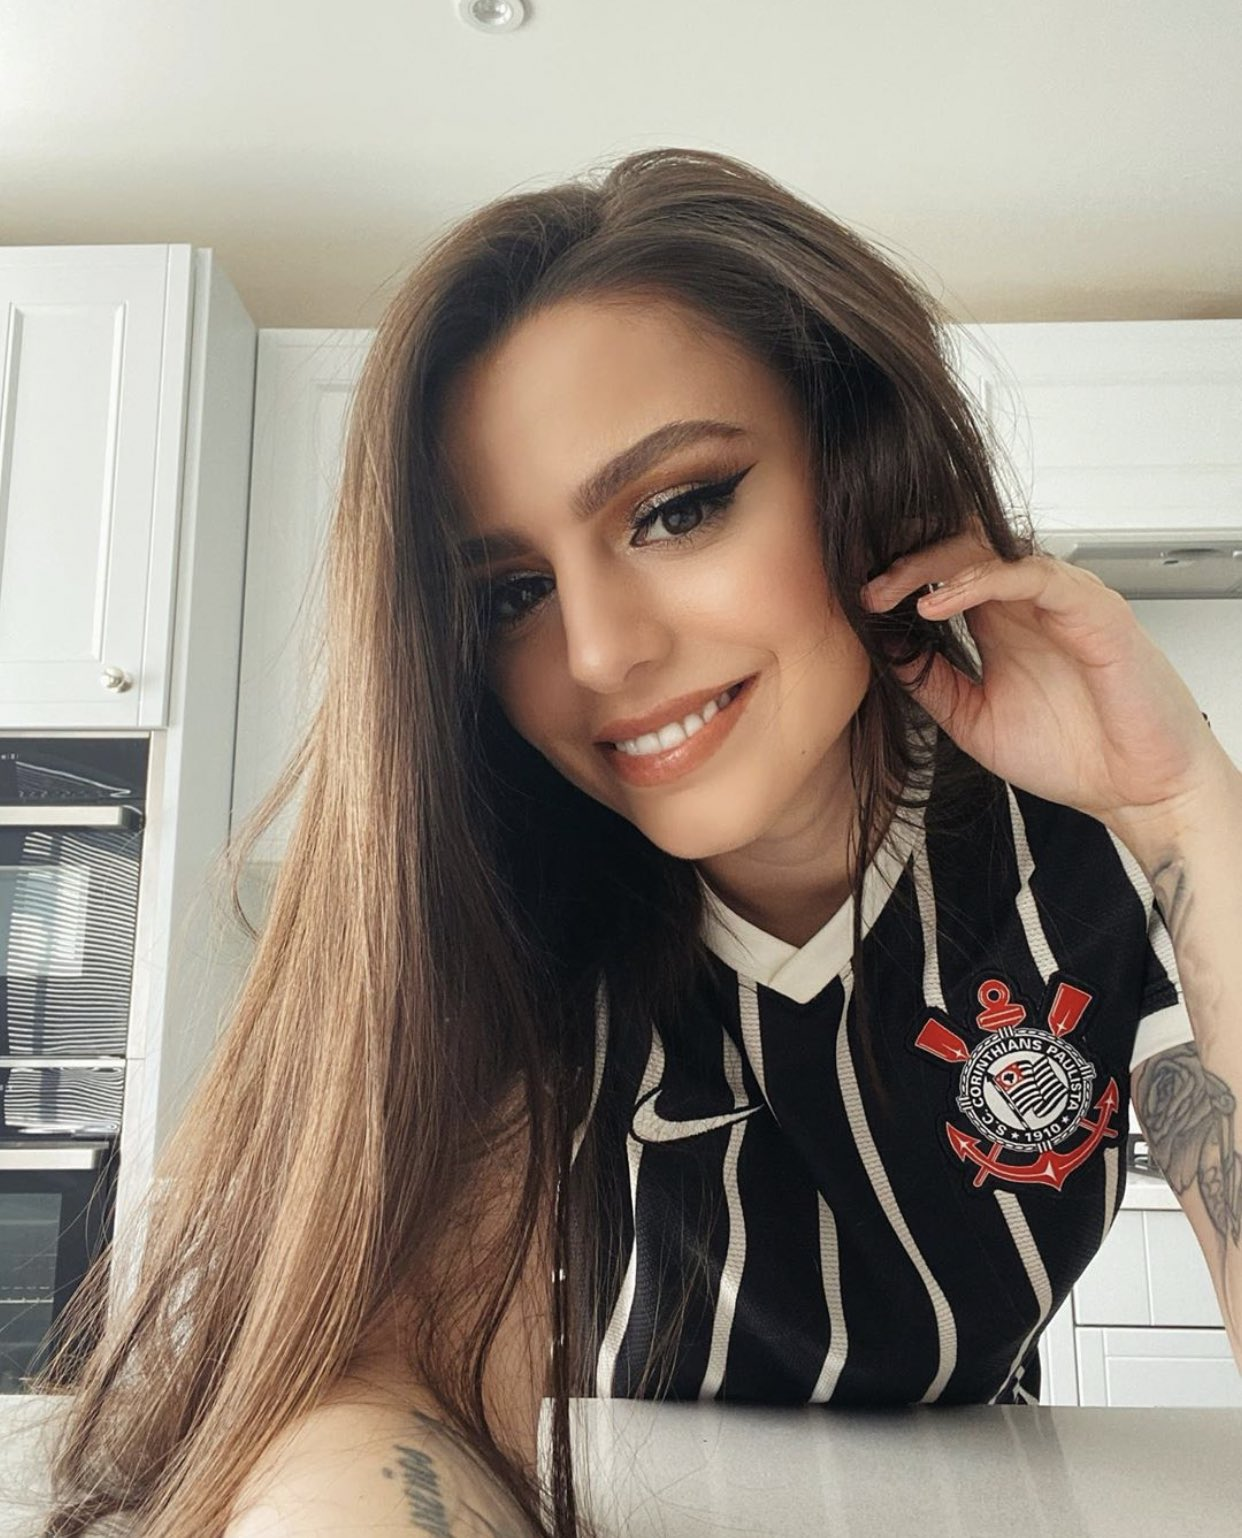 A cantora britânica Cher Lloyd publicou uma foto nas redes sociais com a camisa do Corinthians.